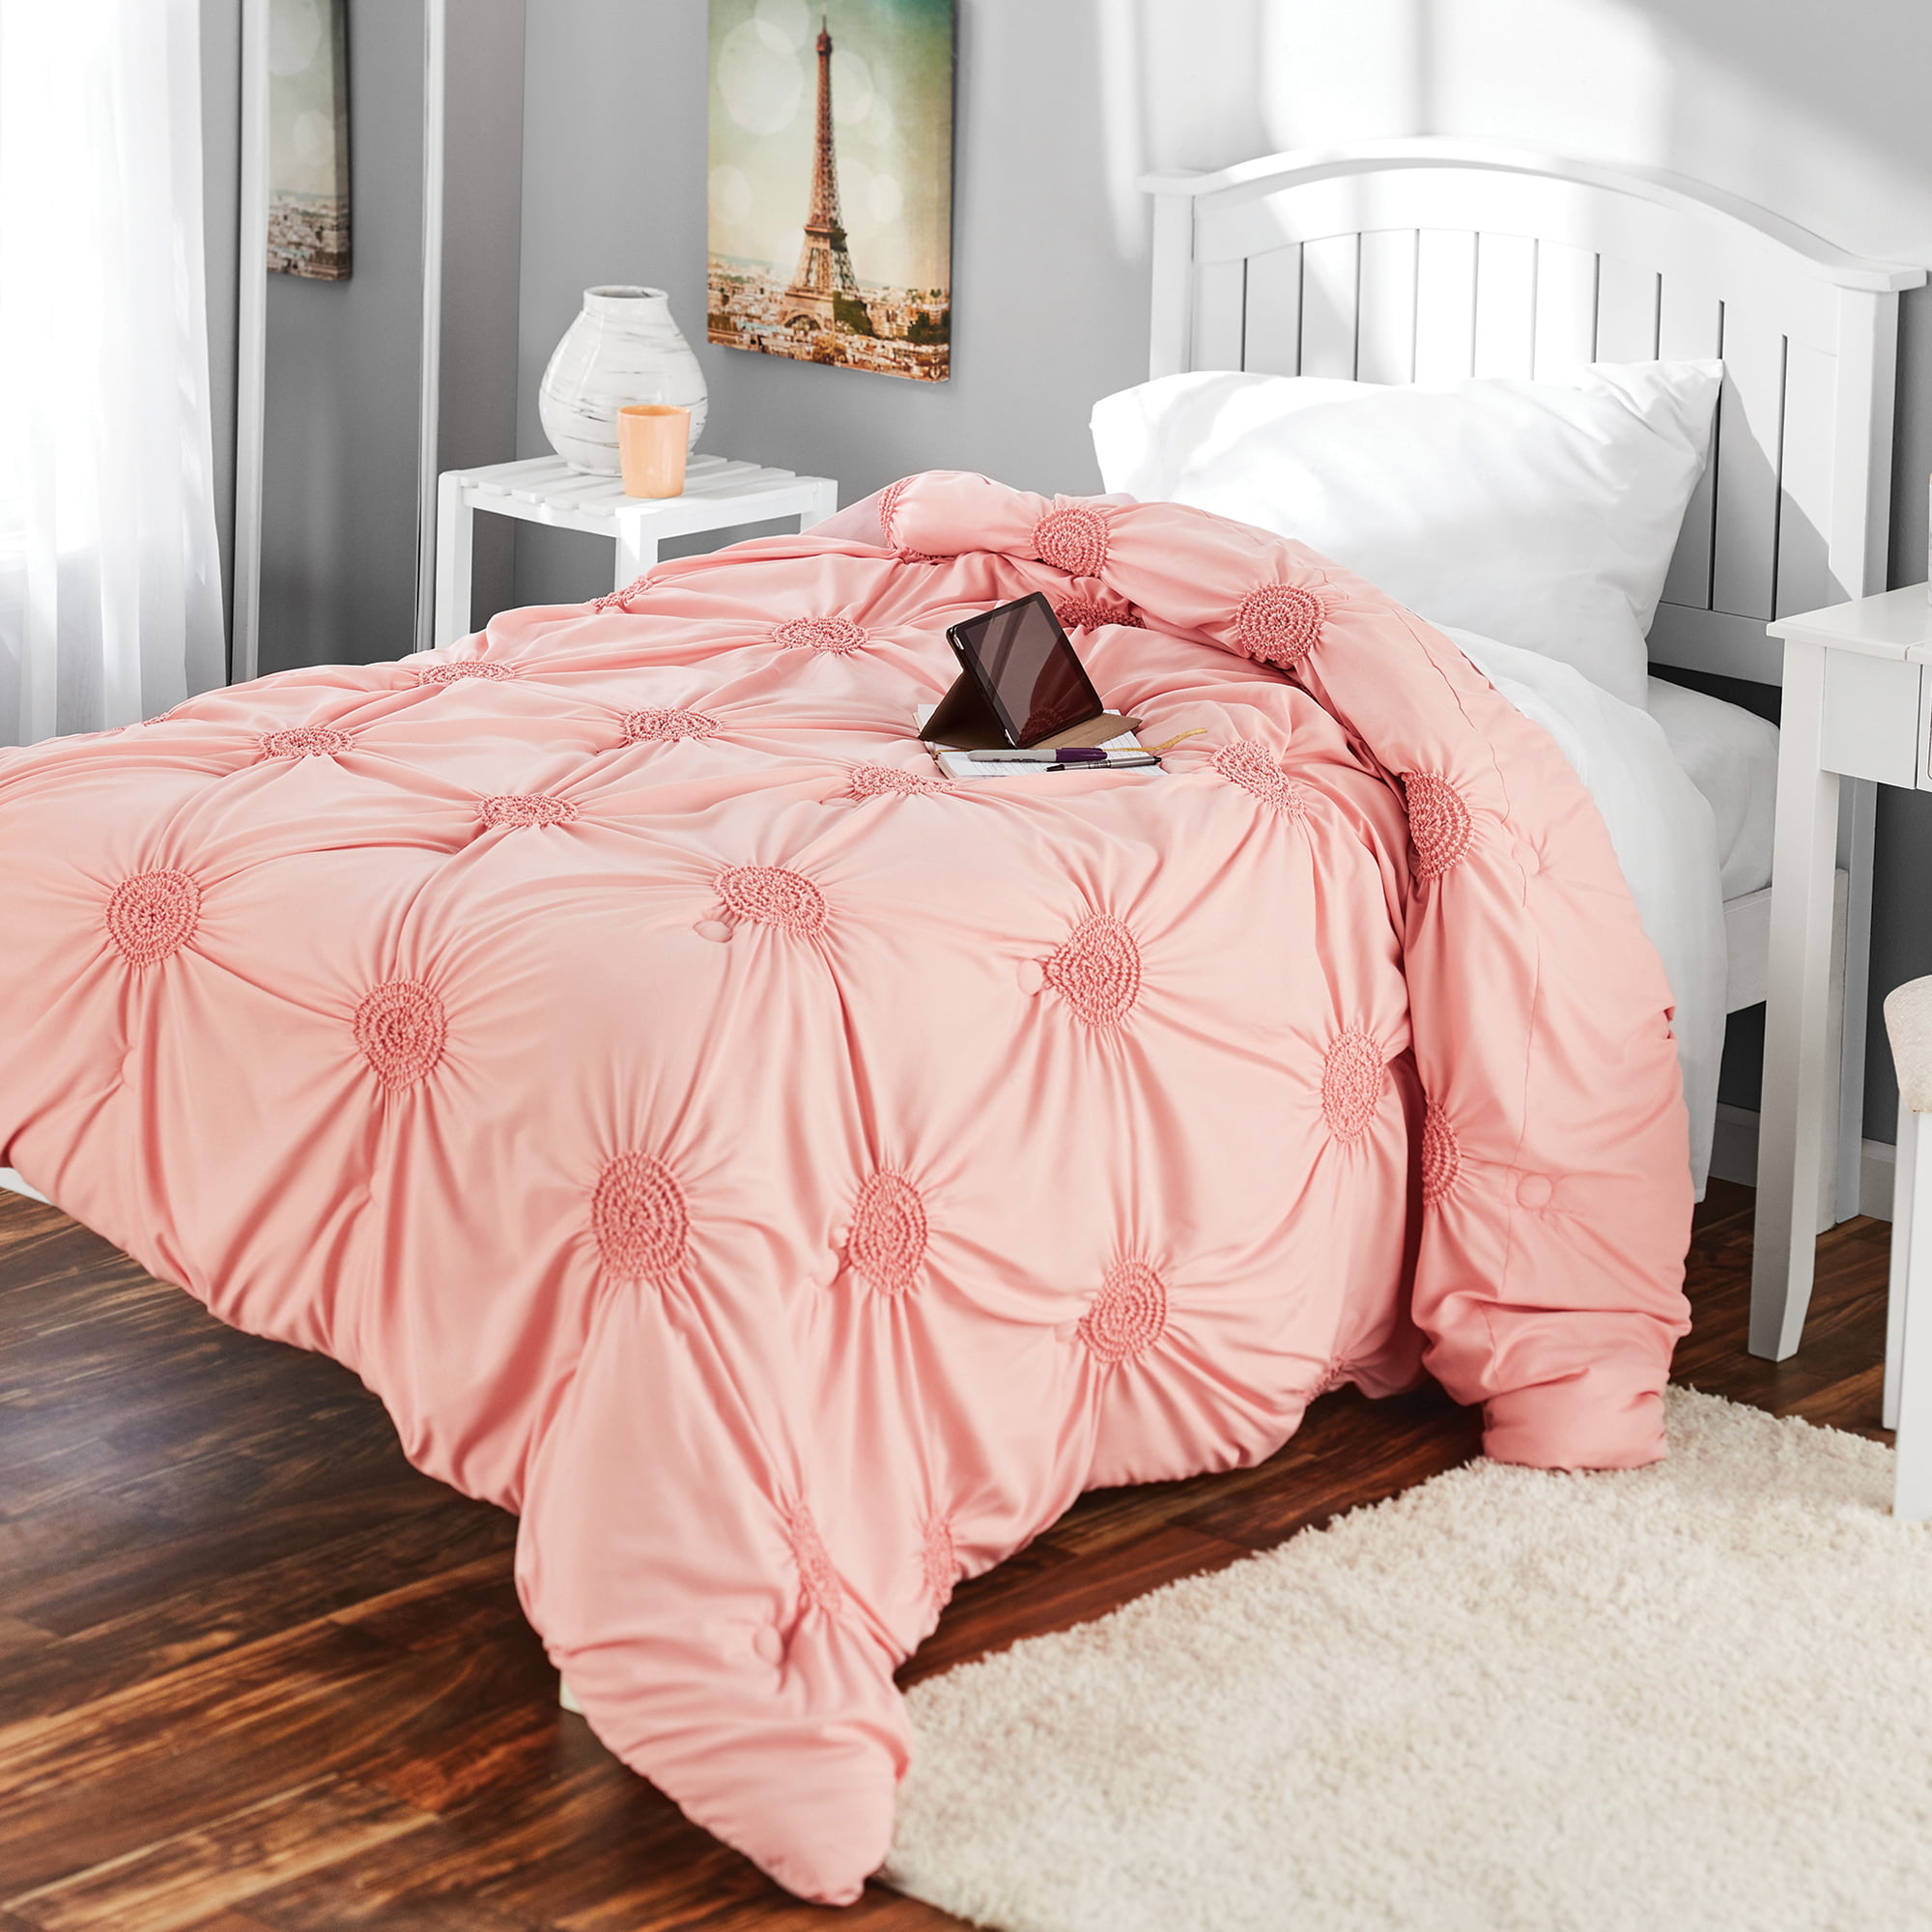 blush pink comforter twin xl